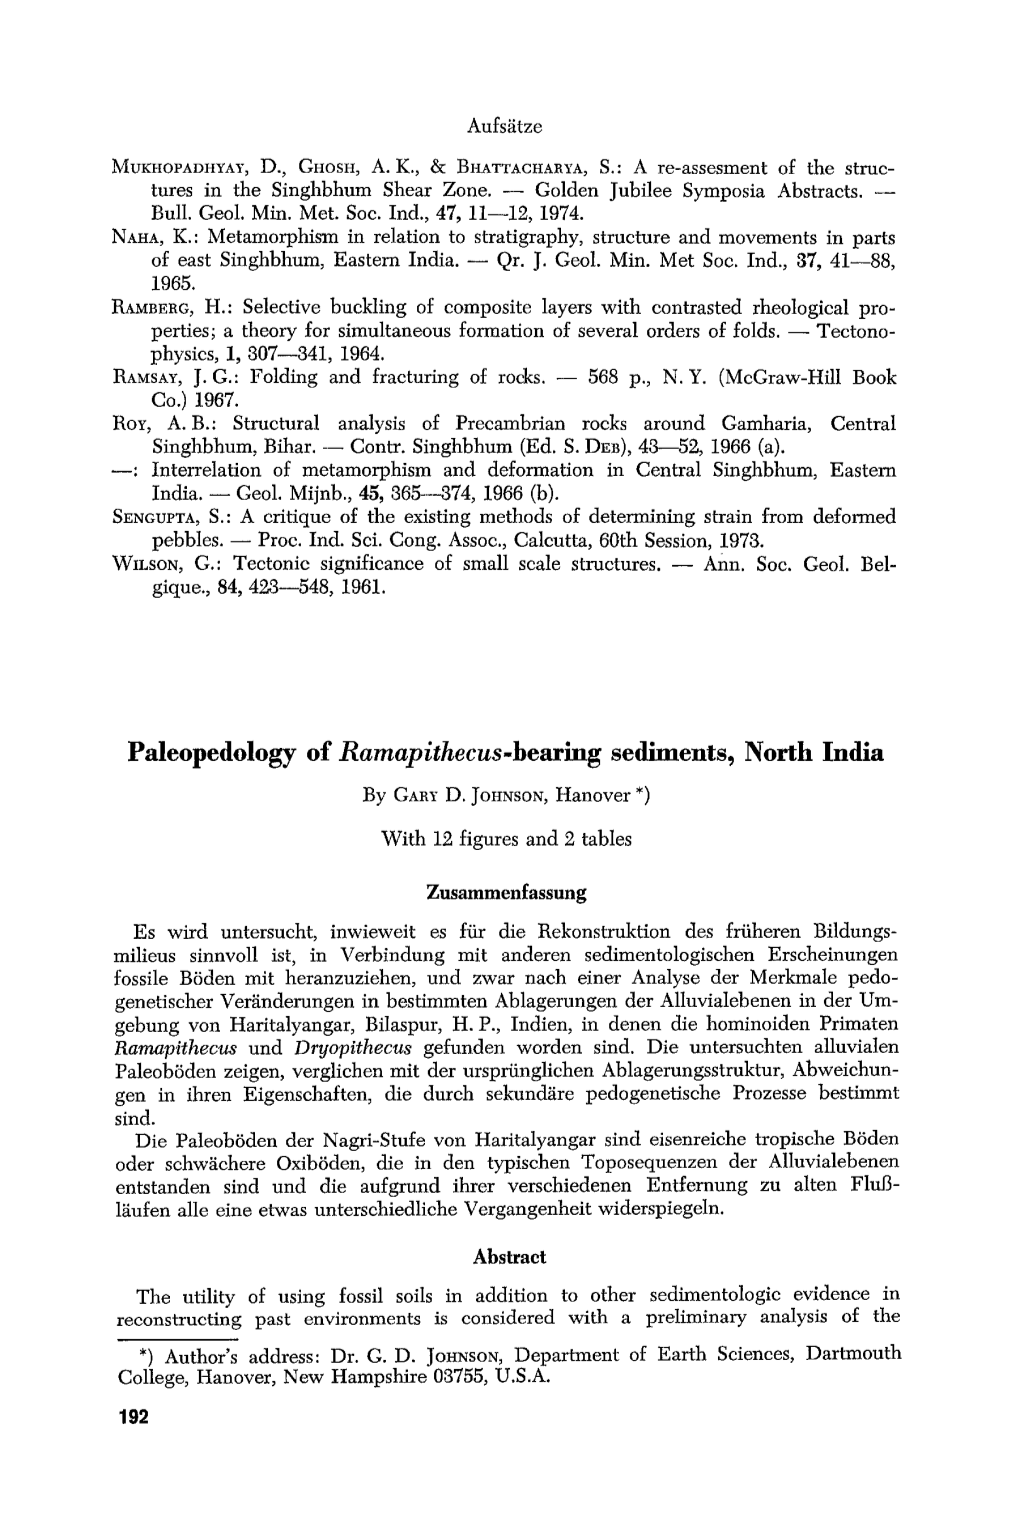 Paleopedology of Ramapithecus.Bearing Sediments, North India by GAILYD